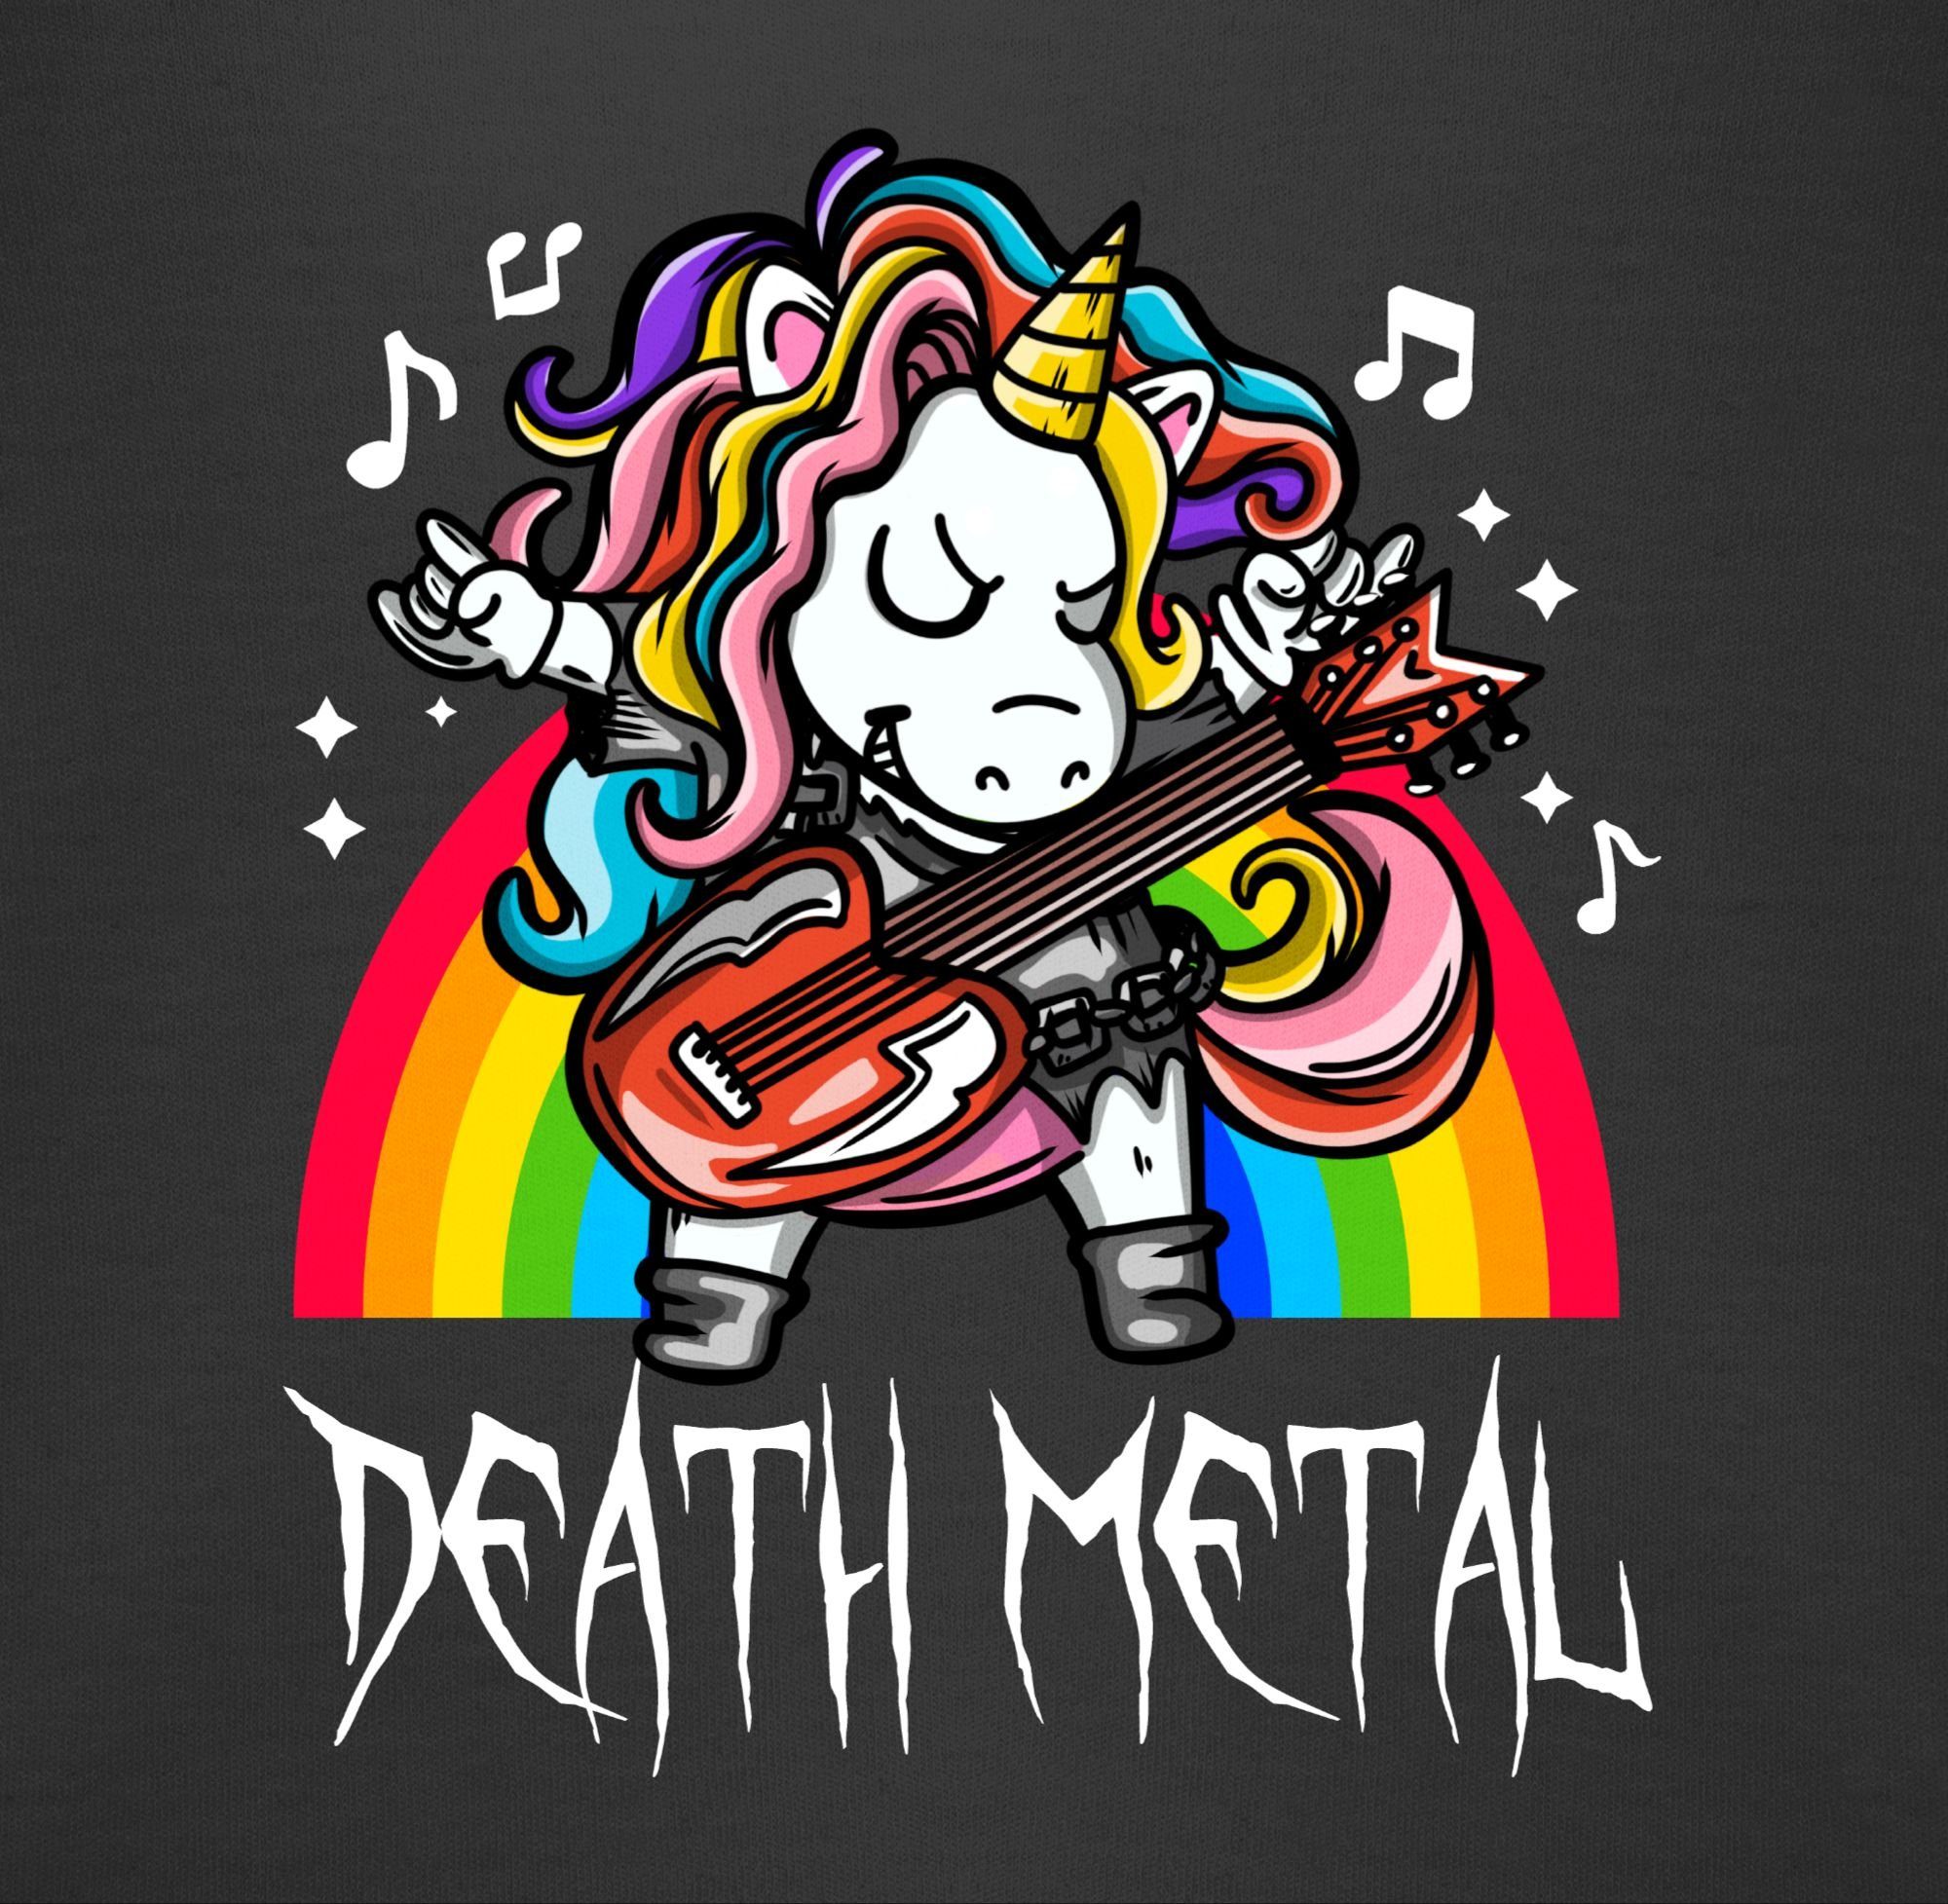 Schwarz Shirtracer 1 Sprüche Einhorn Metal Baby Shirtbody Death